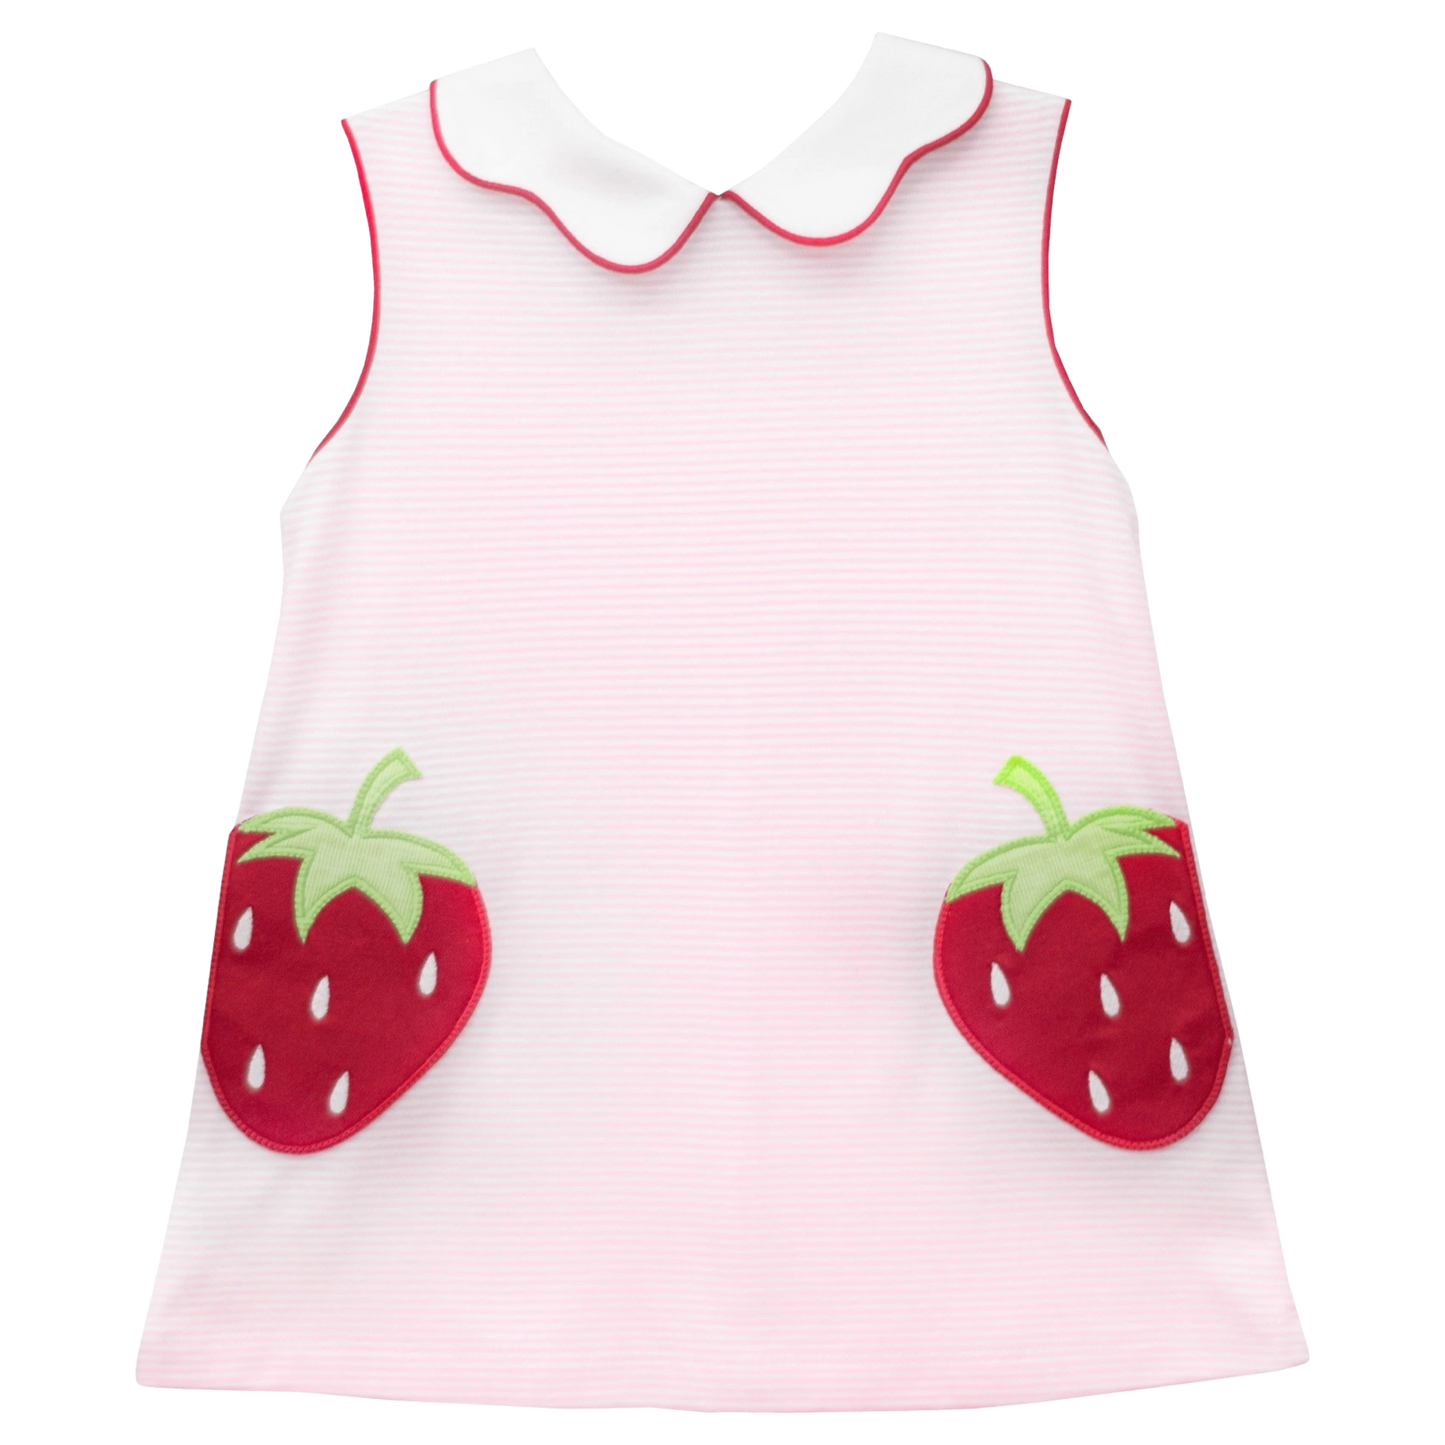 Z Bryar Dress - Strawberry